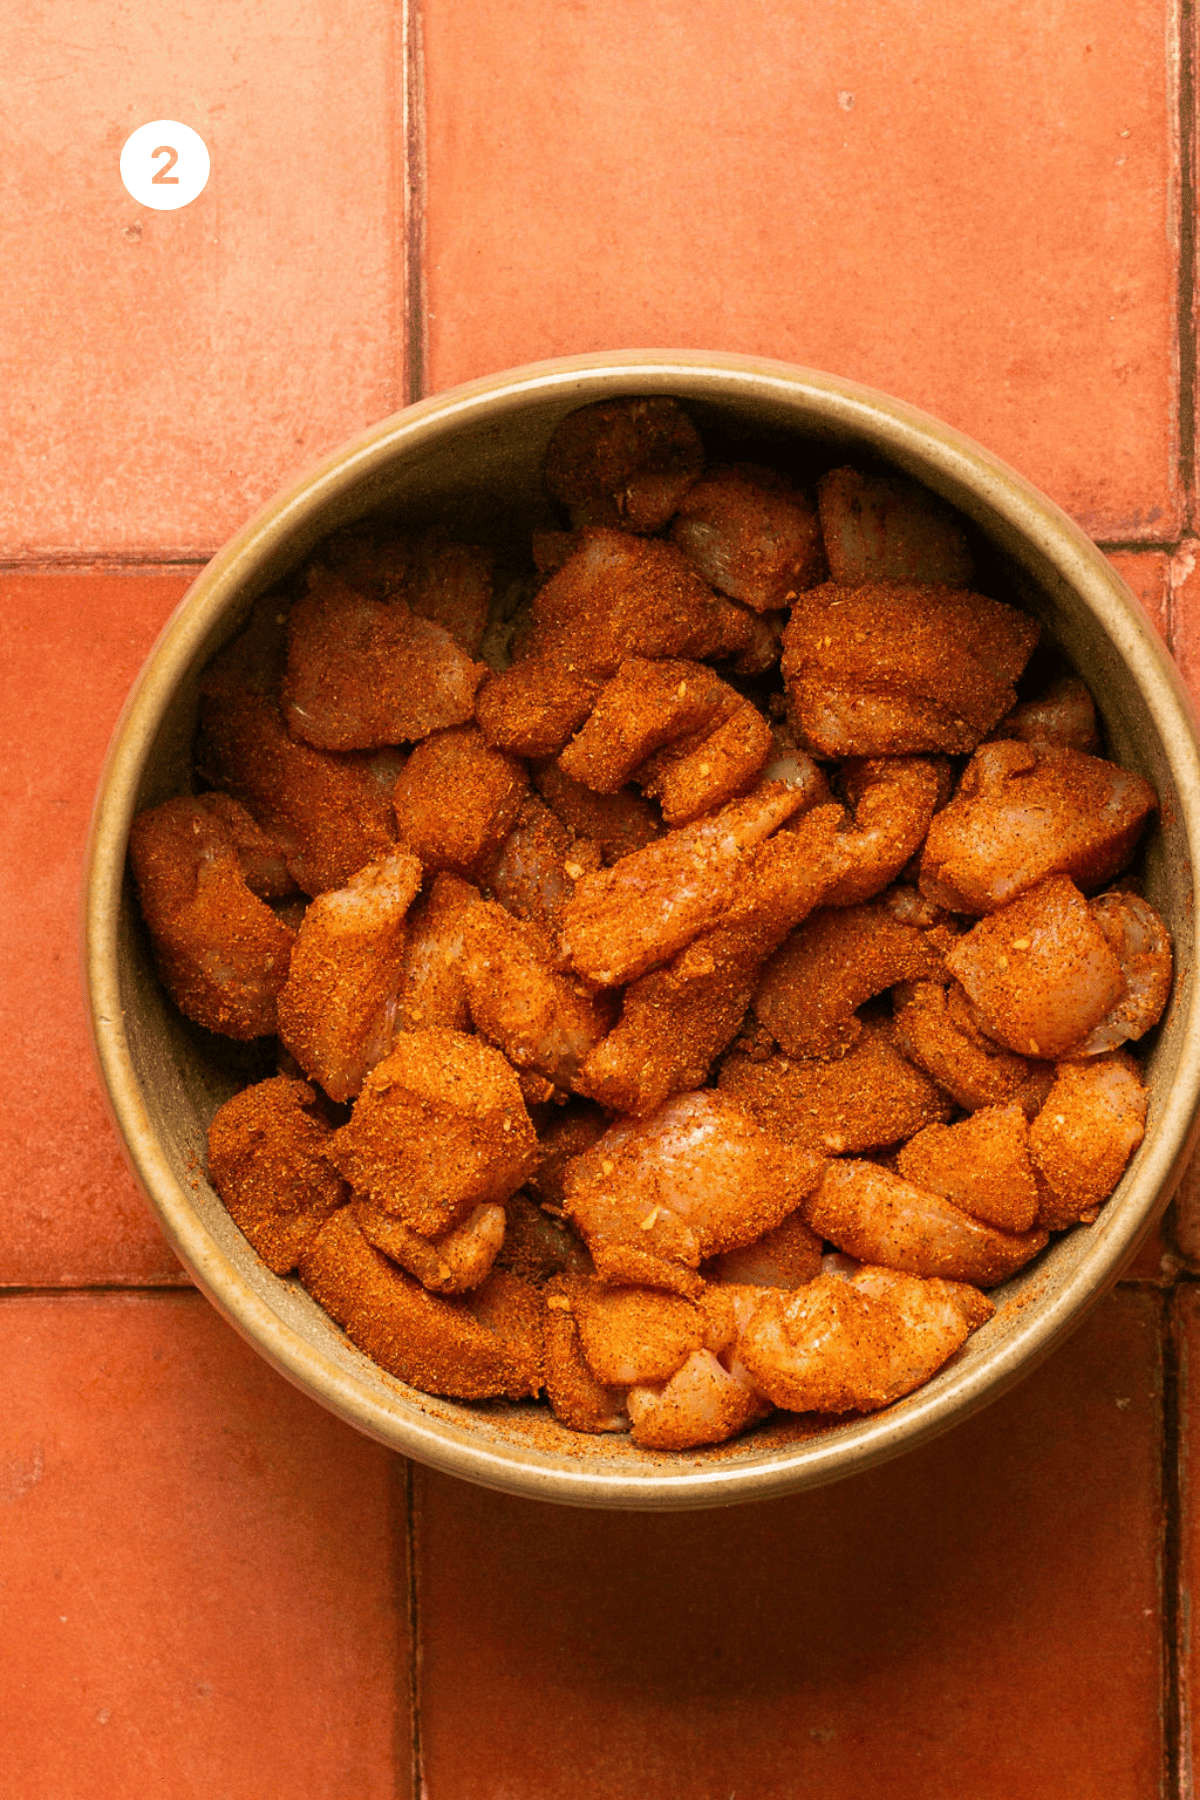 Seasoned chicken in a bowl.